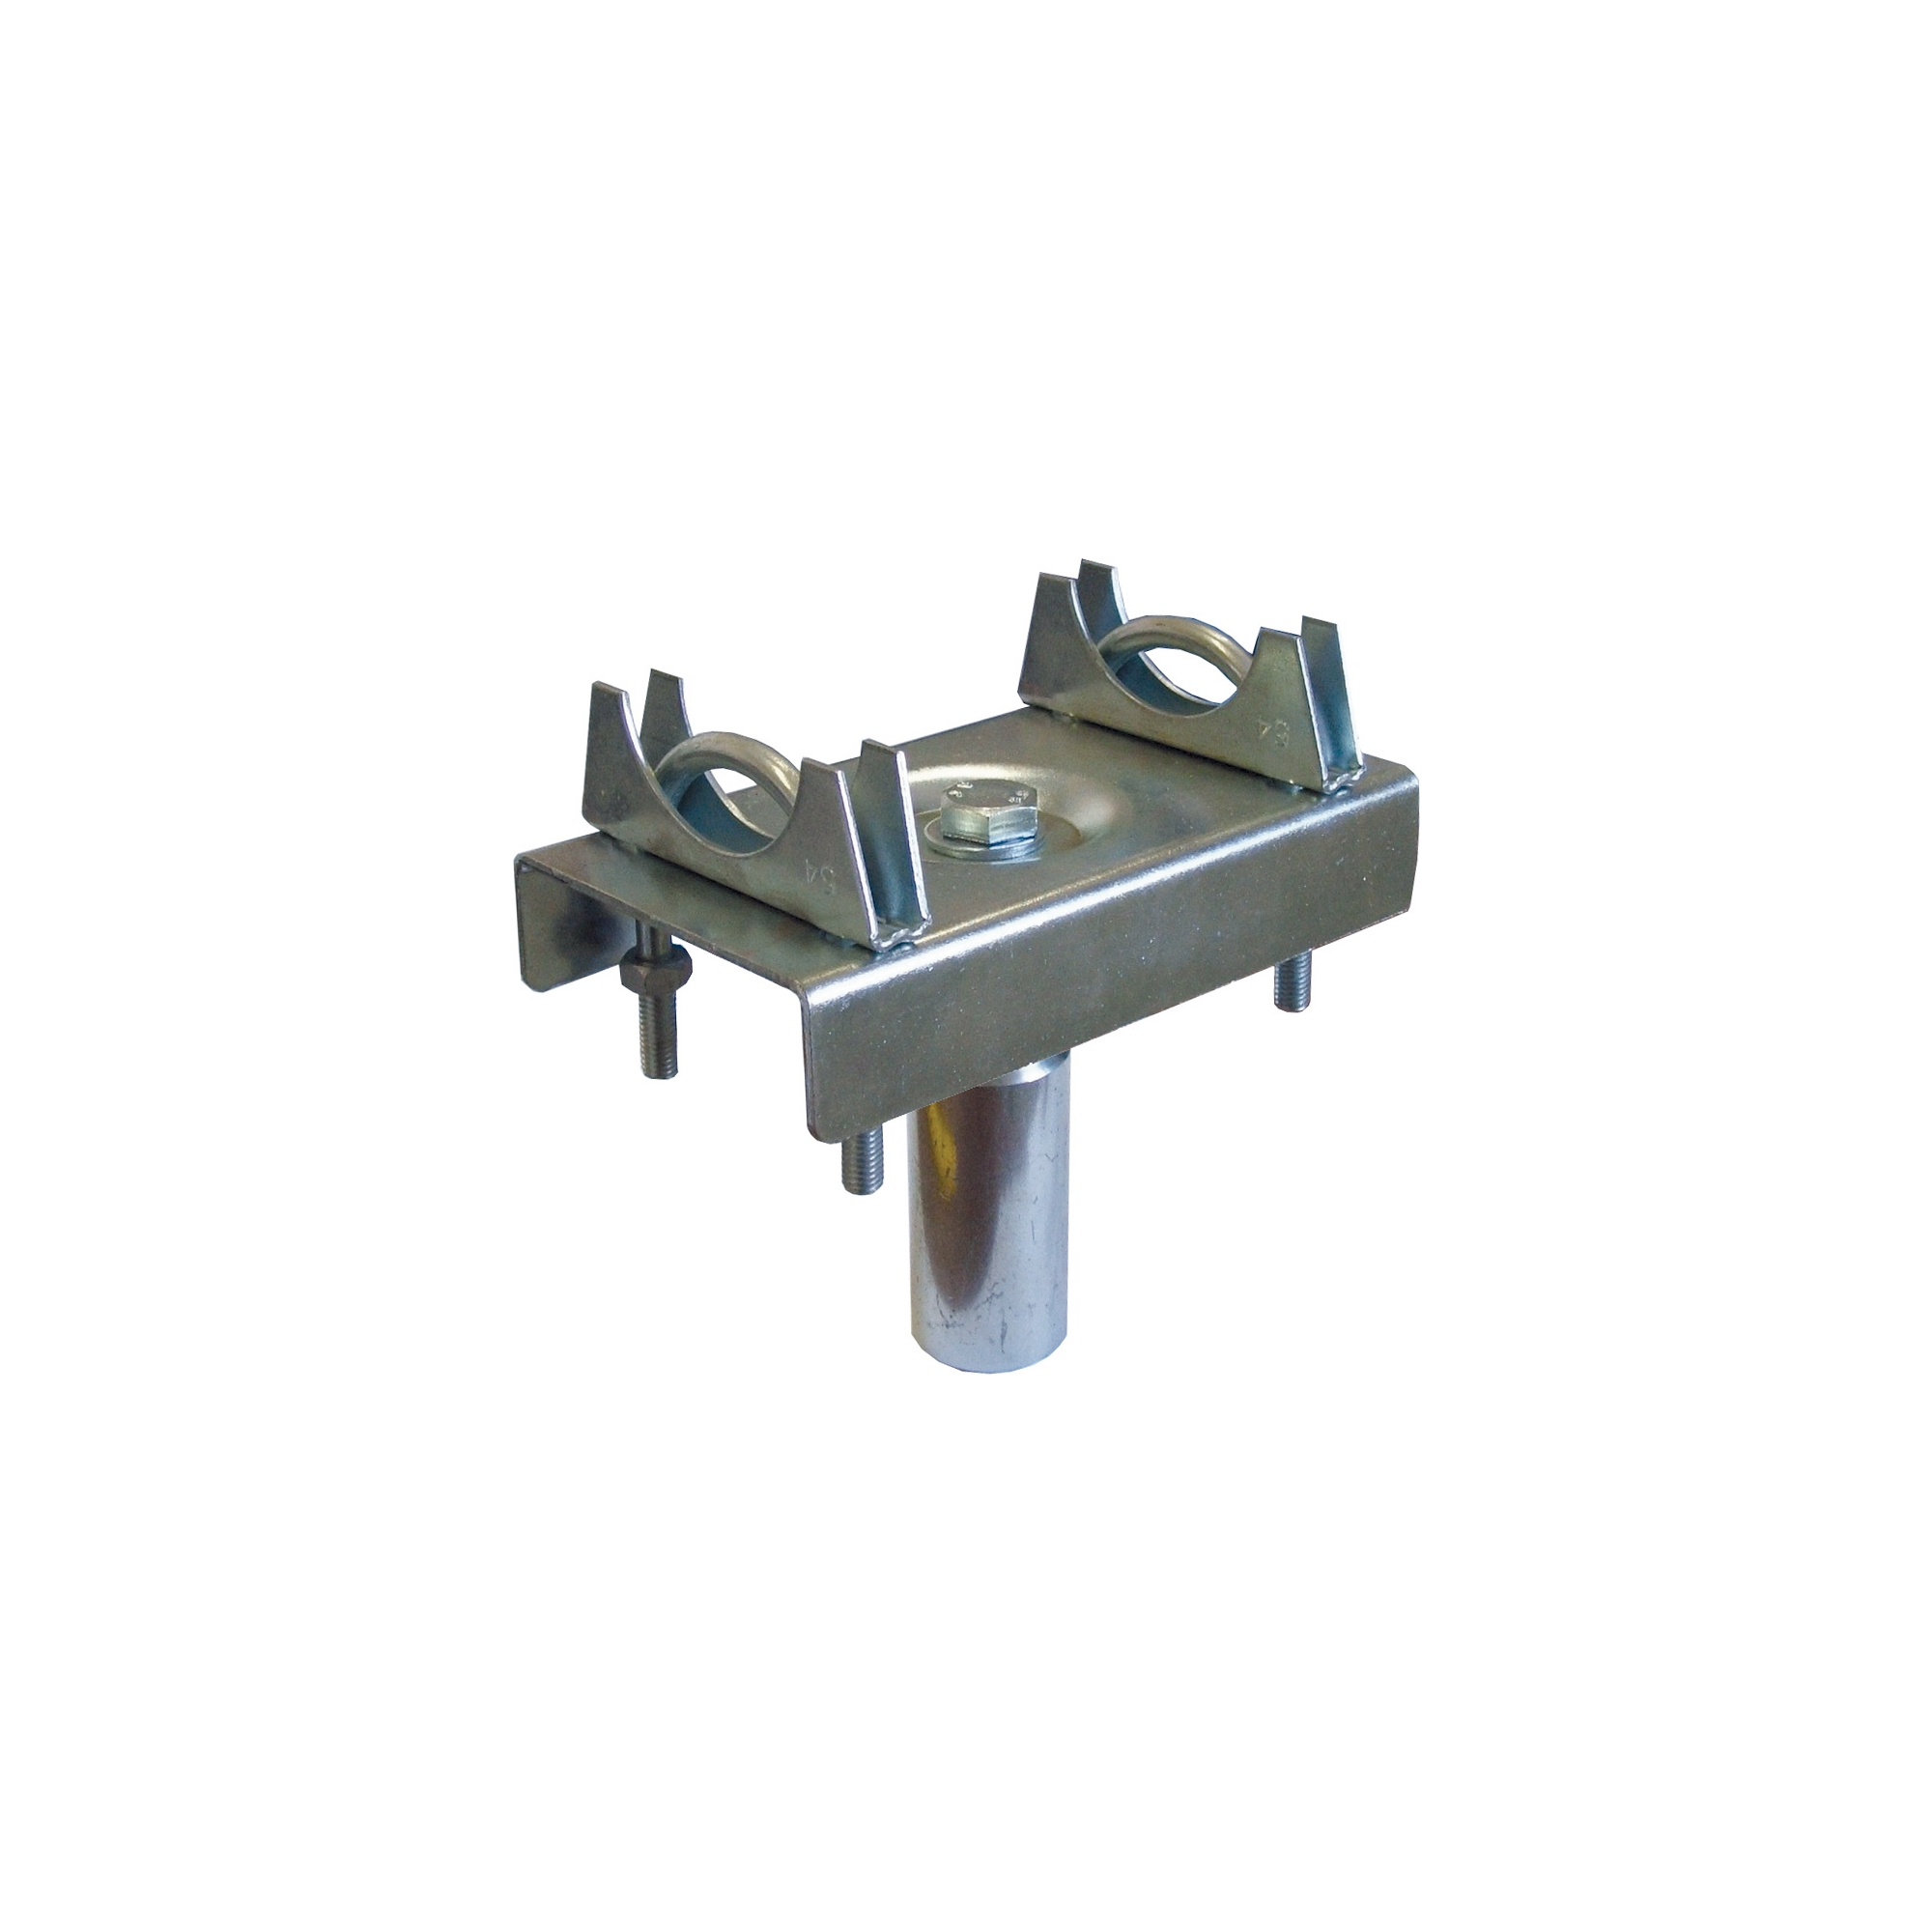 Adattatore in acciaio zincato per tralicci diametro 48/51 mm. con 2 staffe di accoppiamento